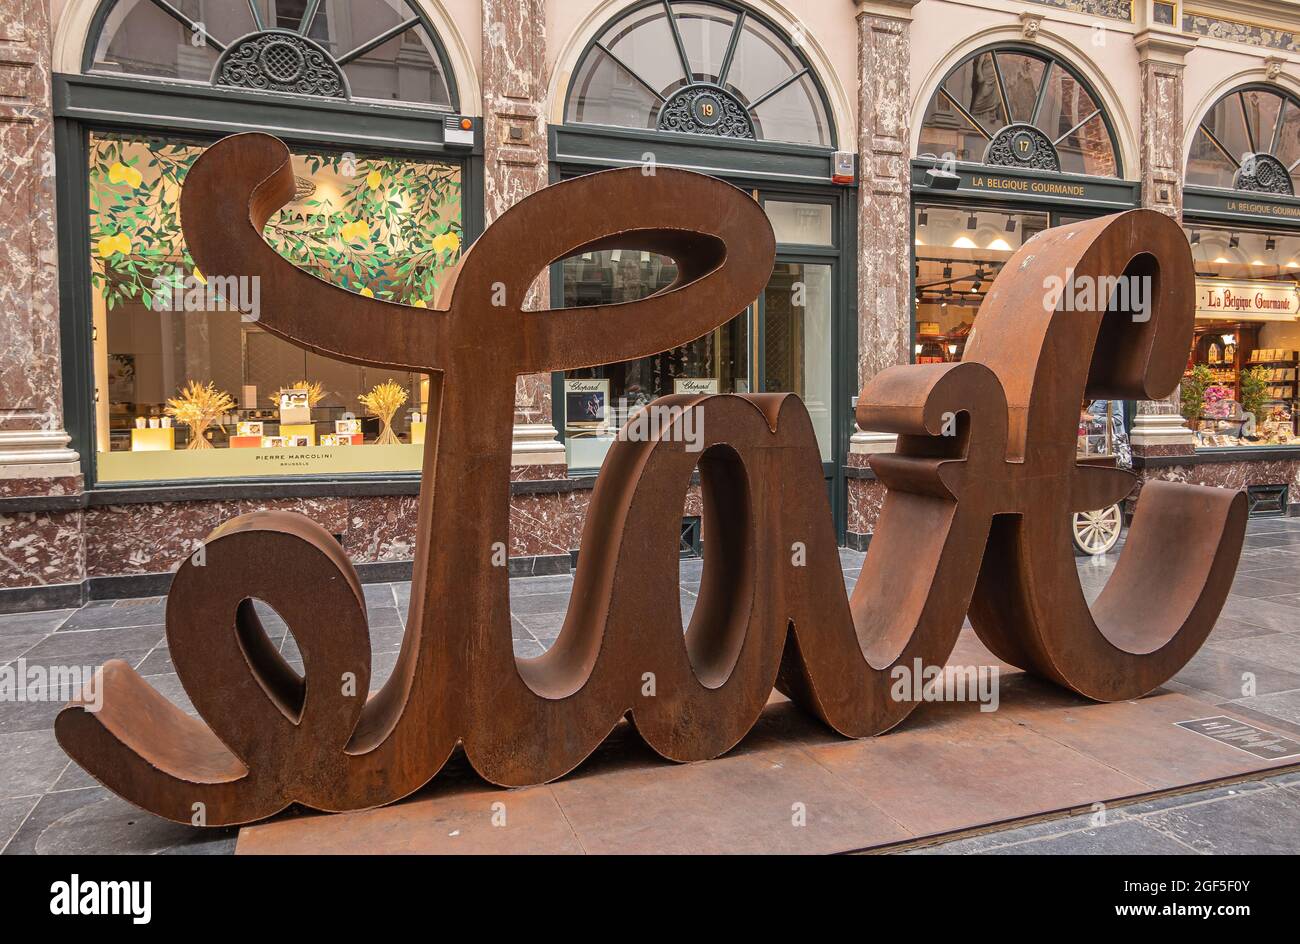 Bruxelles, Belgique - 31 juillet 2021 : Galerie de la Reine, le plus ancien centre commercial public couvert d'Europe. Côté amour du double sens amour-haine brun rus Banque D'Images